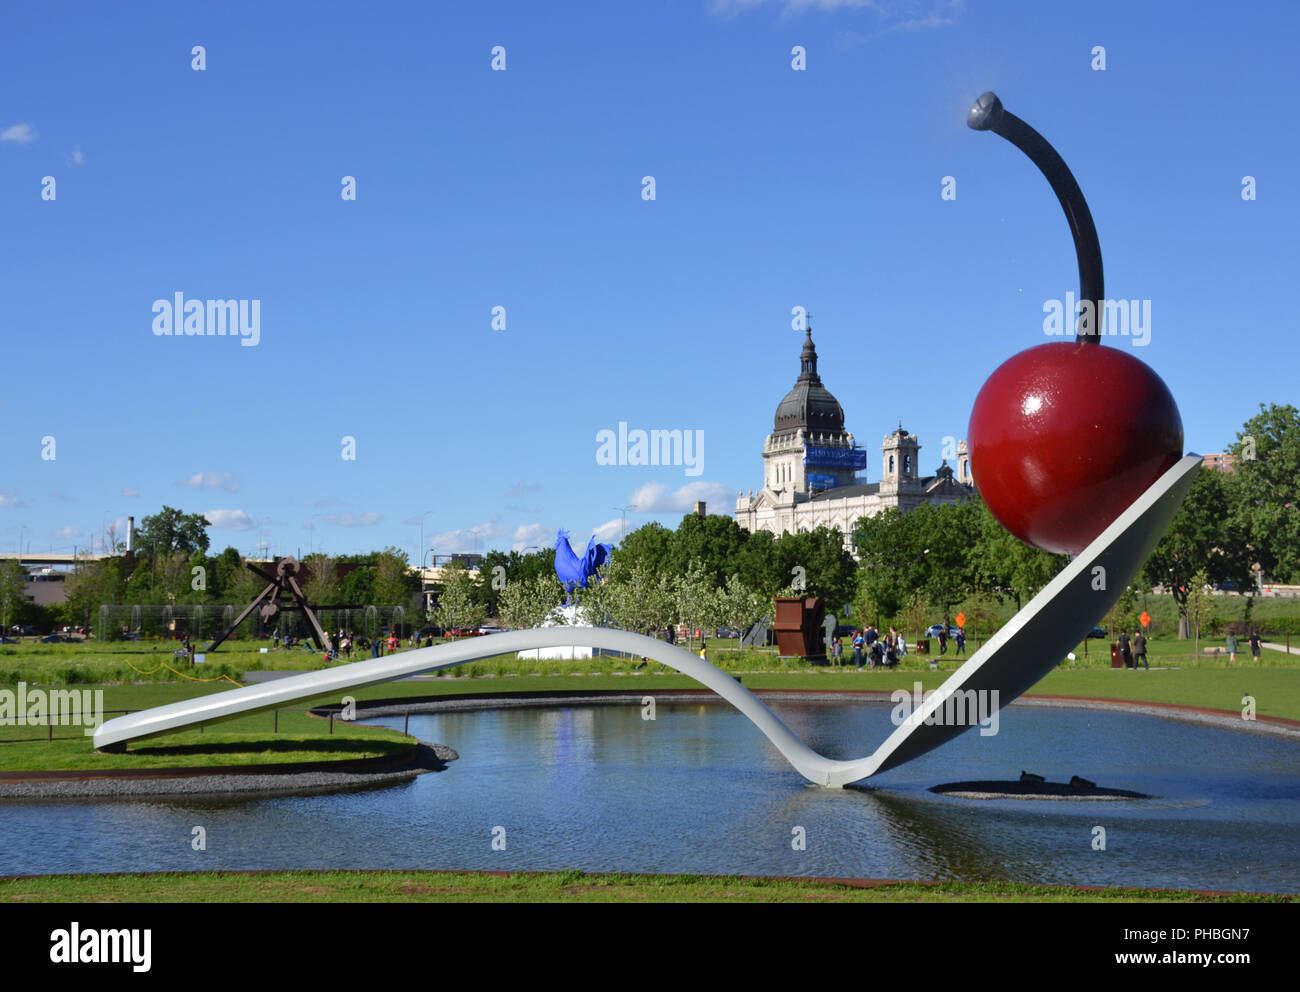 Minneapolis, Minnesota - Juni 3, 2018: Minneapolis Sculpture Garden. Die Spoonbridge und Cherry Skulptur, in Minneapolis, Minnesota Stockfoto